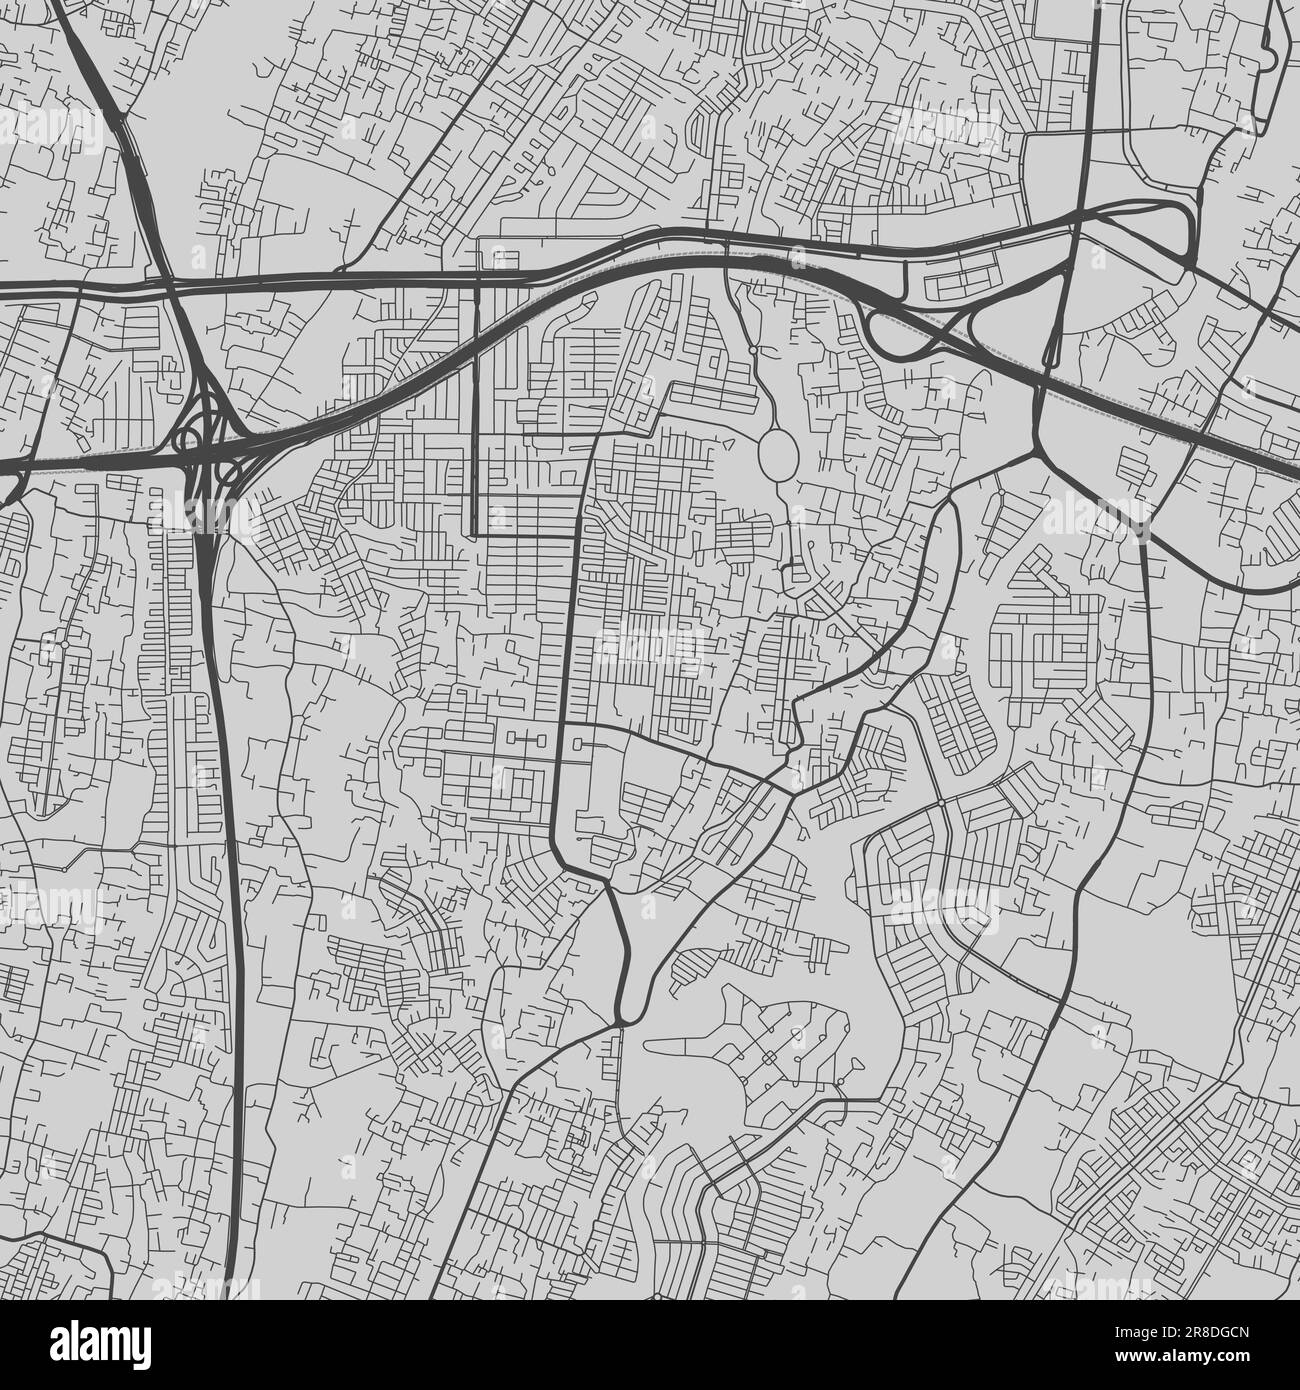 Stadtplan von Bekasi. Urbanes Schwarz-Weiß-Poster. Straßenkartenbild mit vertikaler Ansicht der Stadt. Stock Vektor